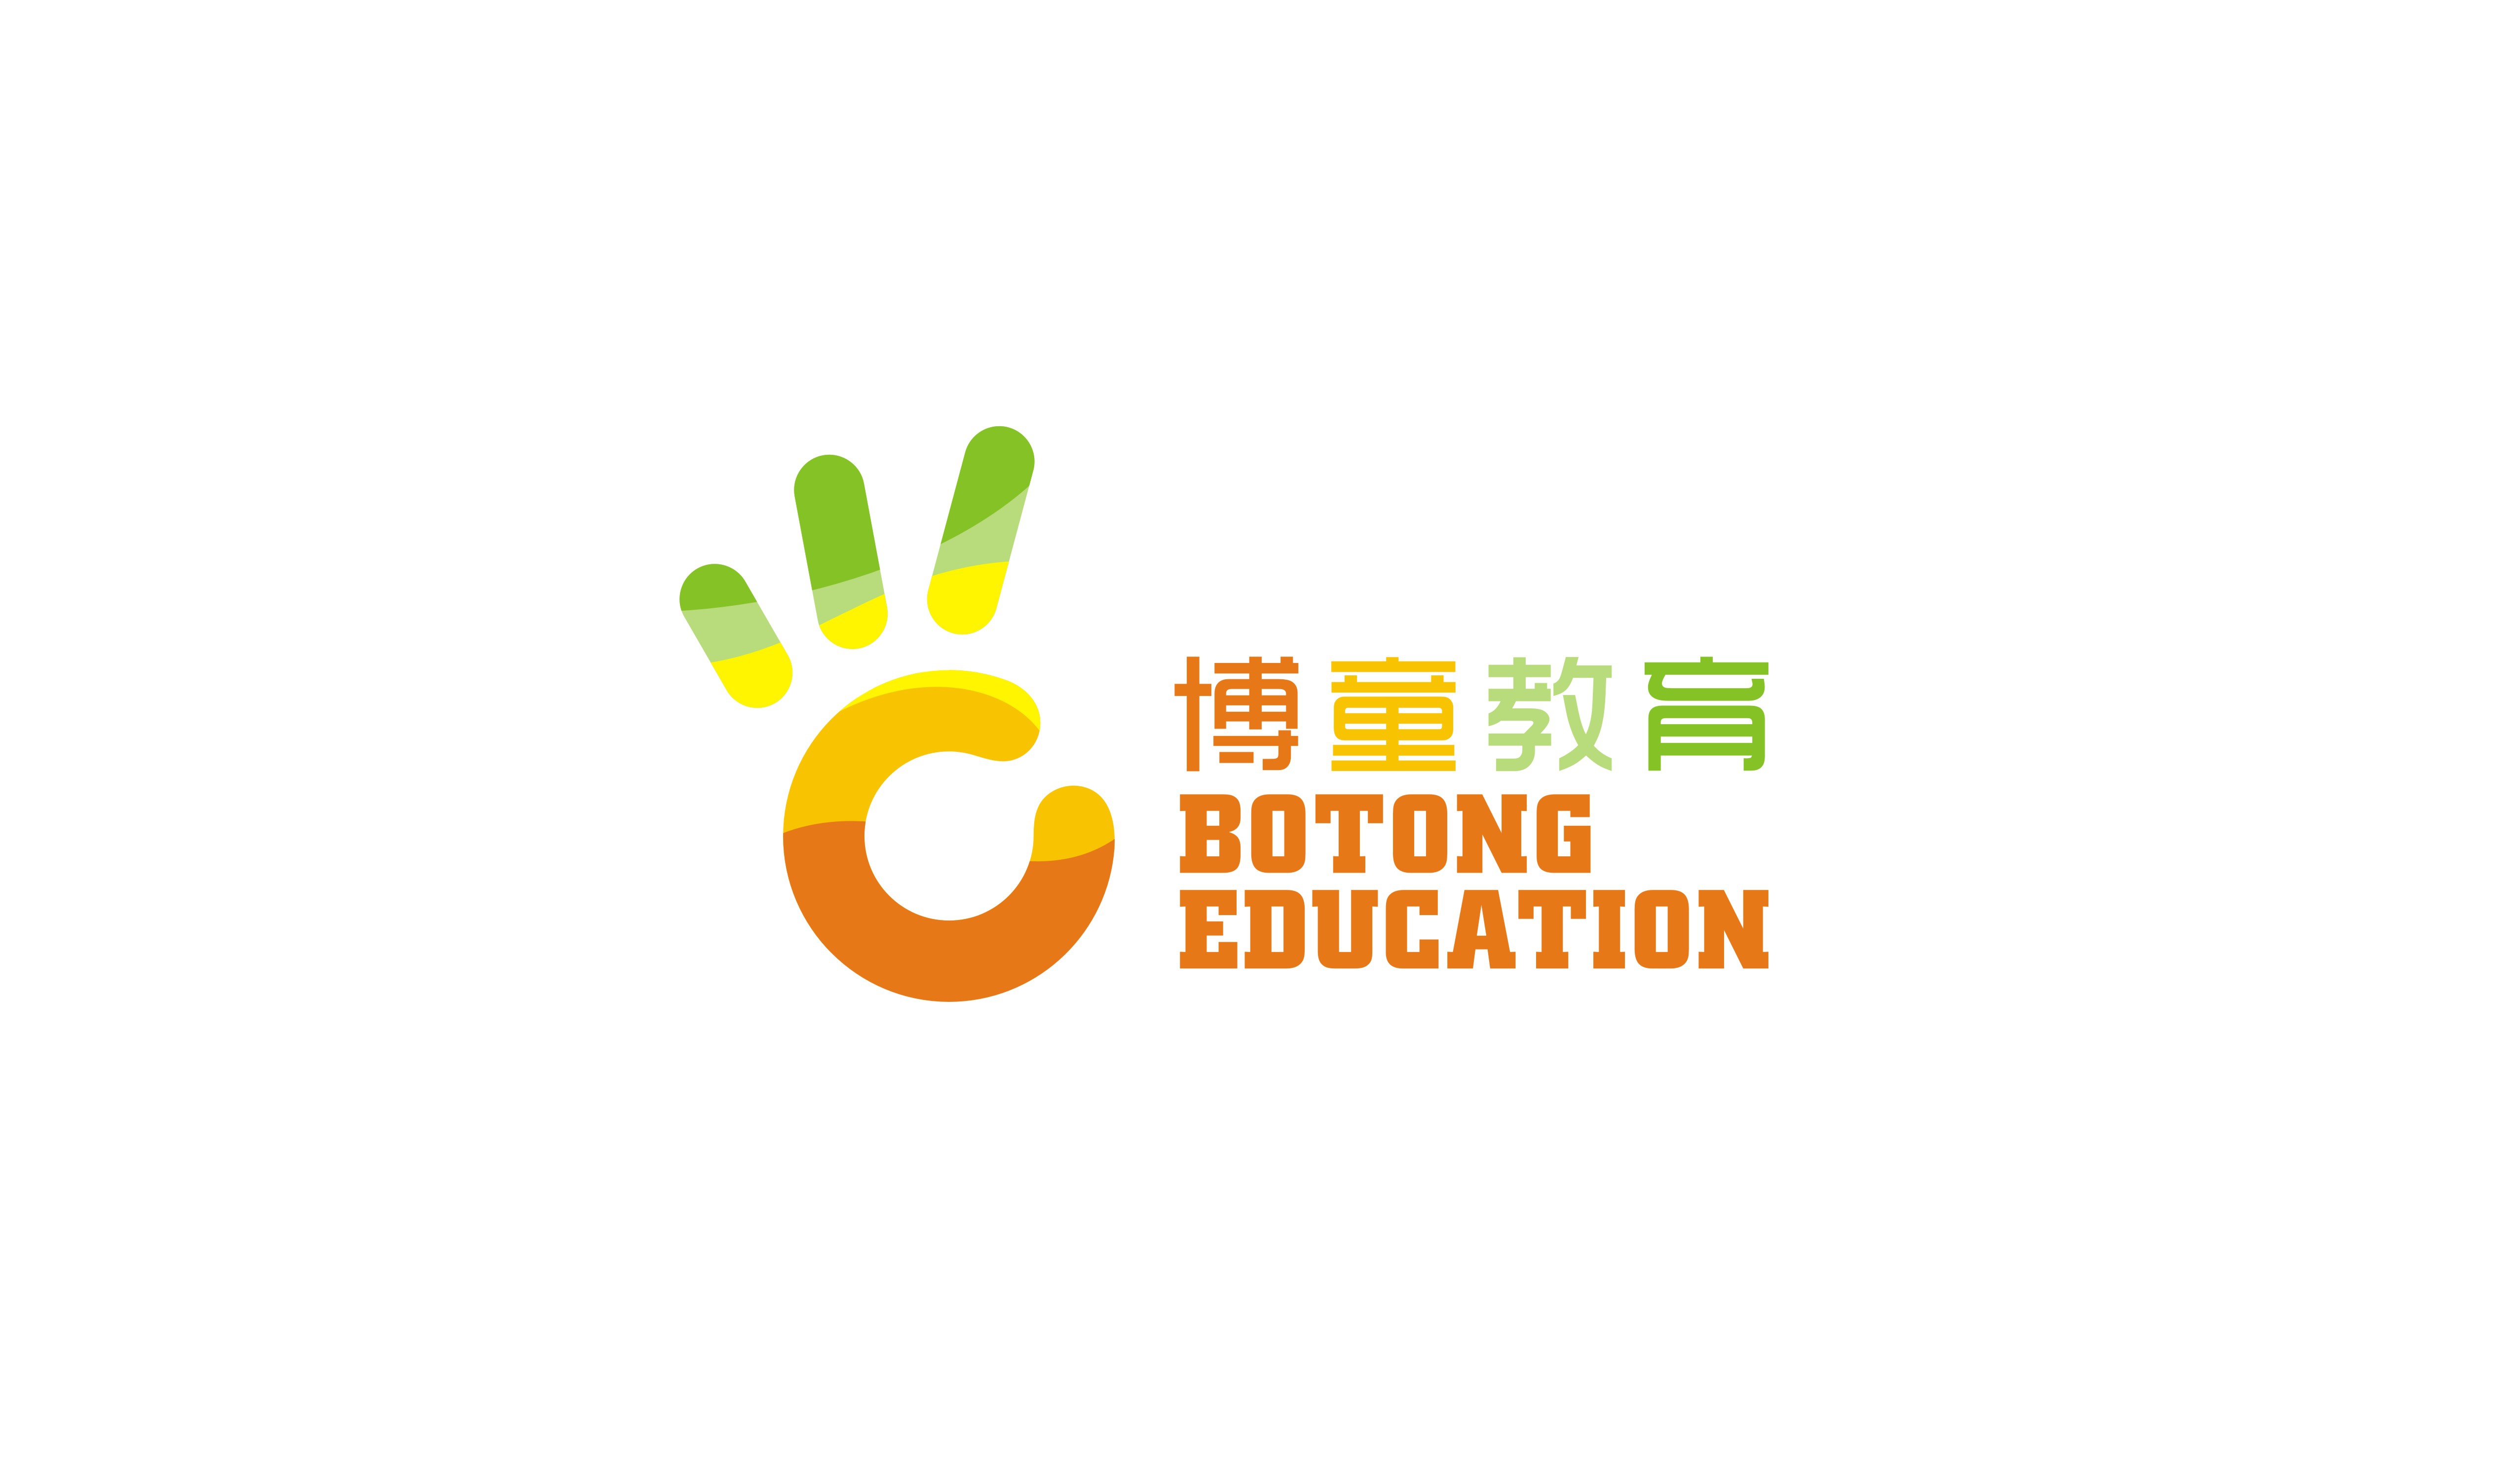 桂林博童教育科技有限公司